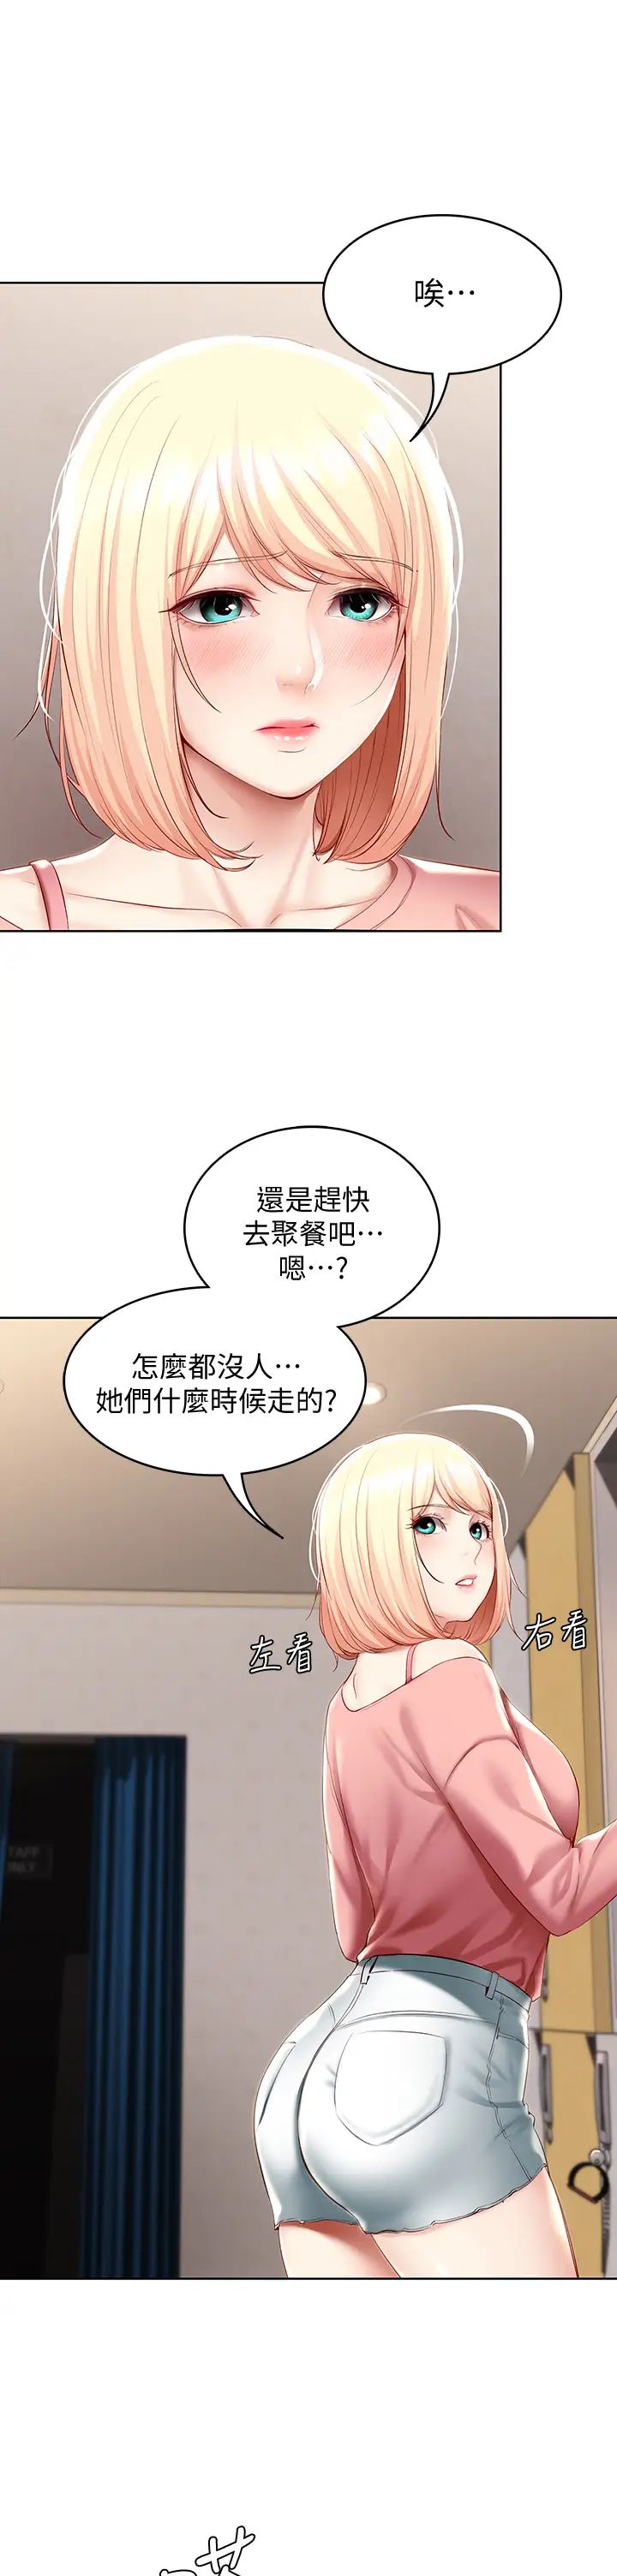 韩国污漫画 寄宿日記 第62话培琳可口的酥胸 38